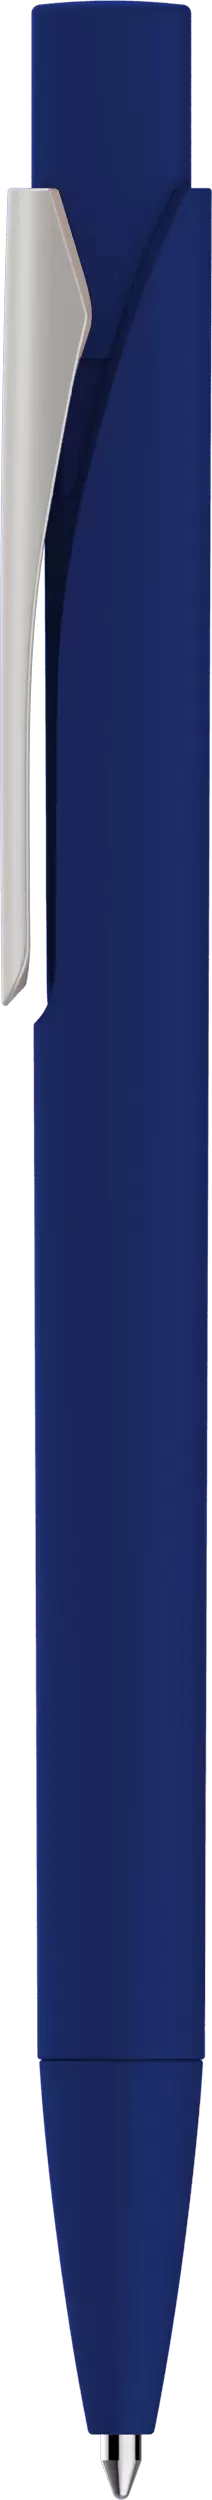 Ручка MASTER SOFT Темно-синяя 1040-14